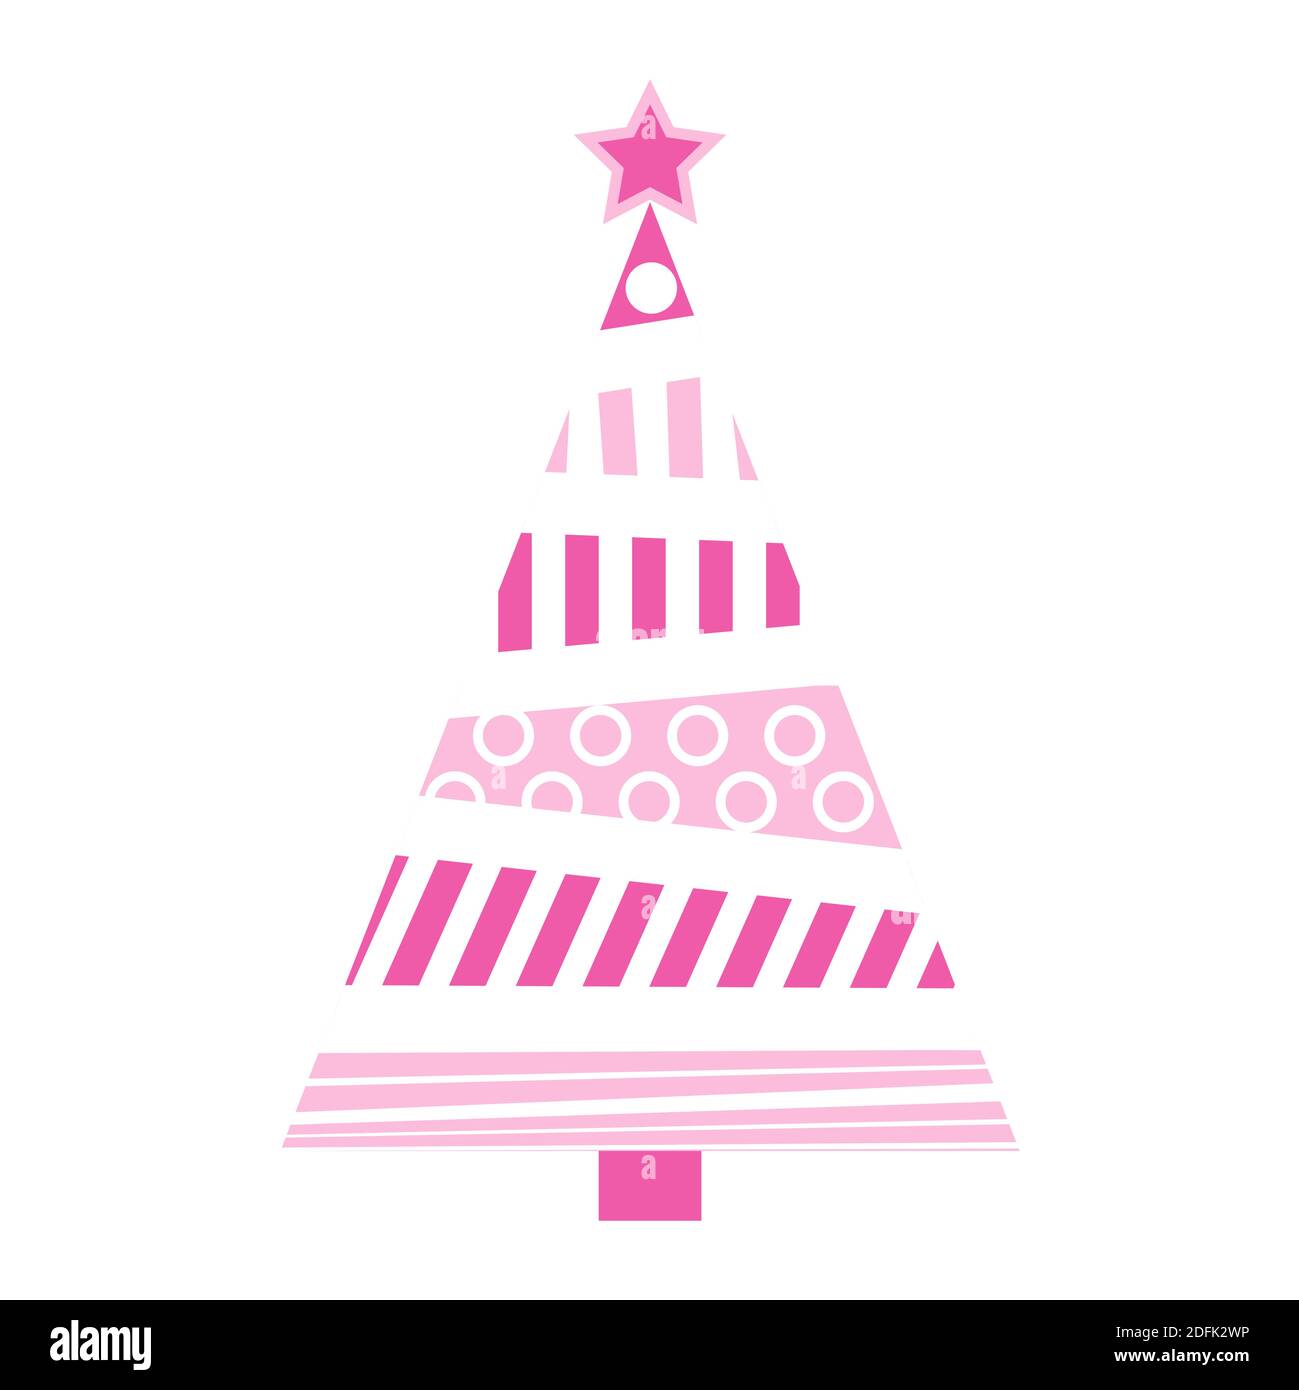 Abstrakte weihnachtsbaum Illustration. Rosa Pastell Tannenbaum für Weihnachten aus Kreisen und Bars gemacht. Vektorsymbol auf weißem Hintergrund isoliert. Einfaches Holid Stock Vektor